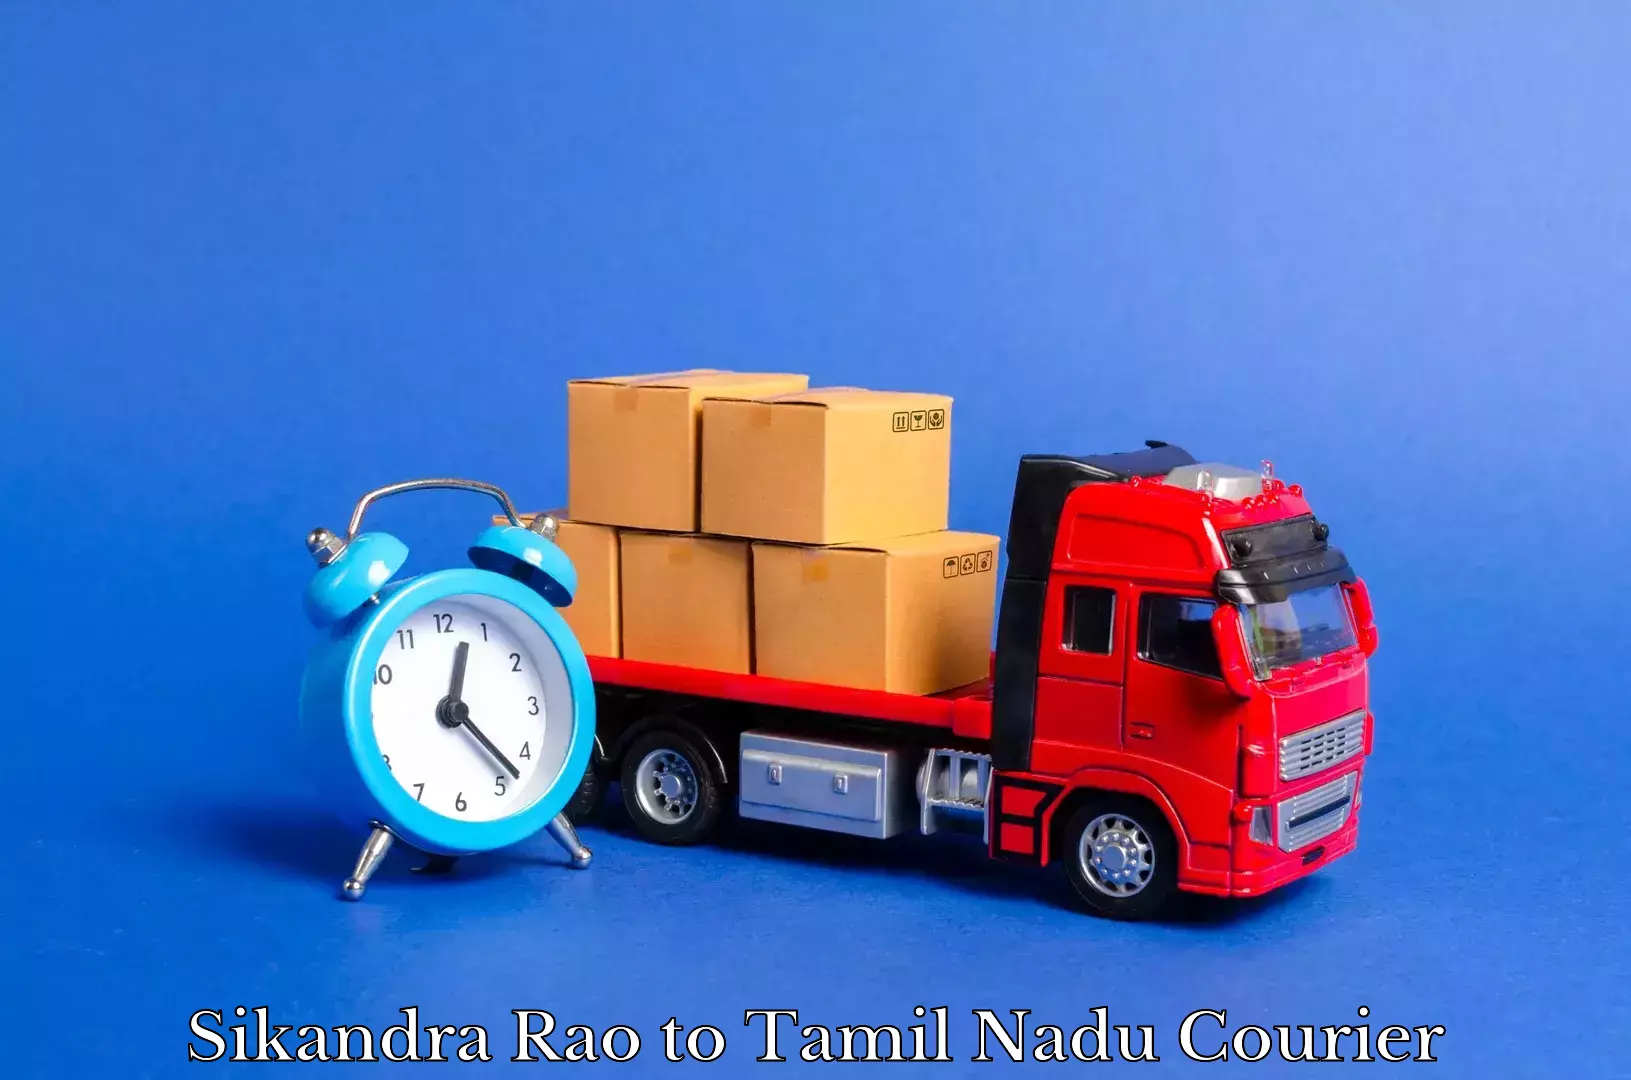 Full-service furniture transport Sikandra Rao to Sholinghur